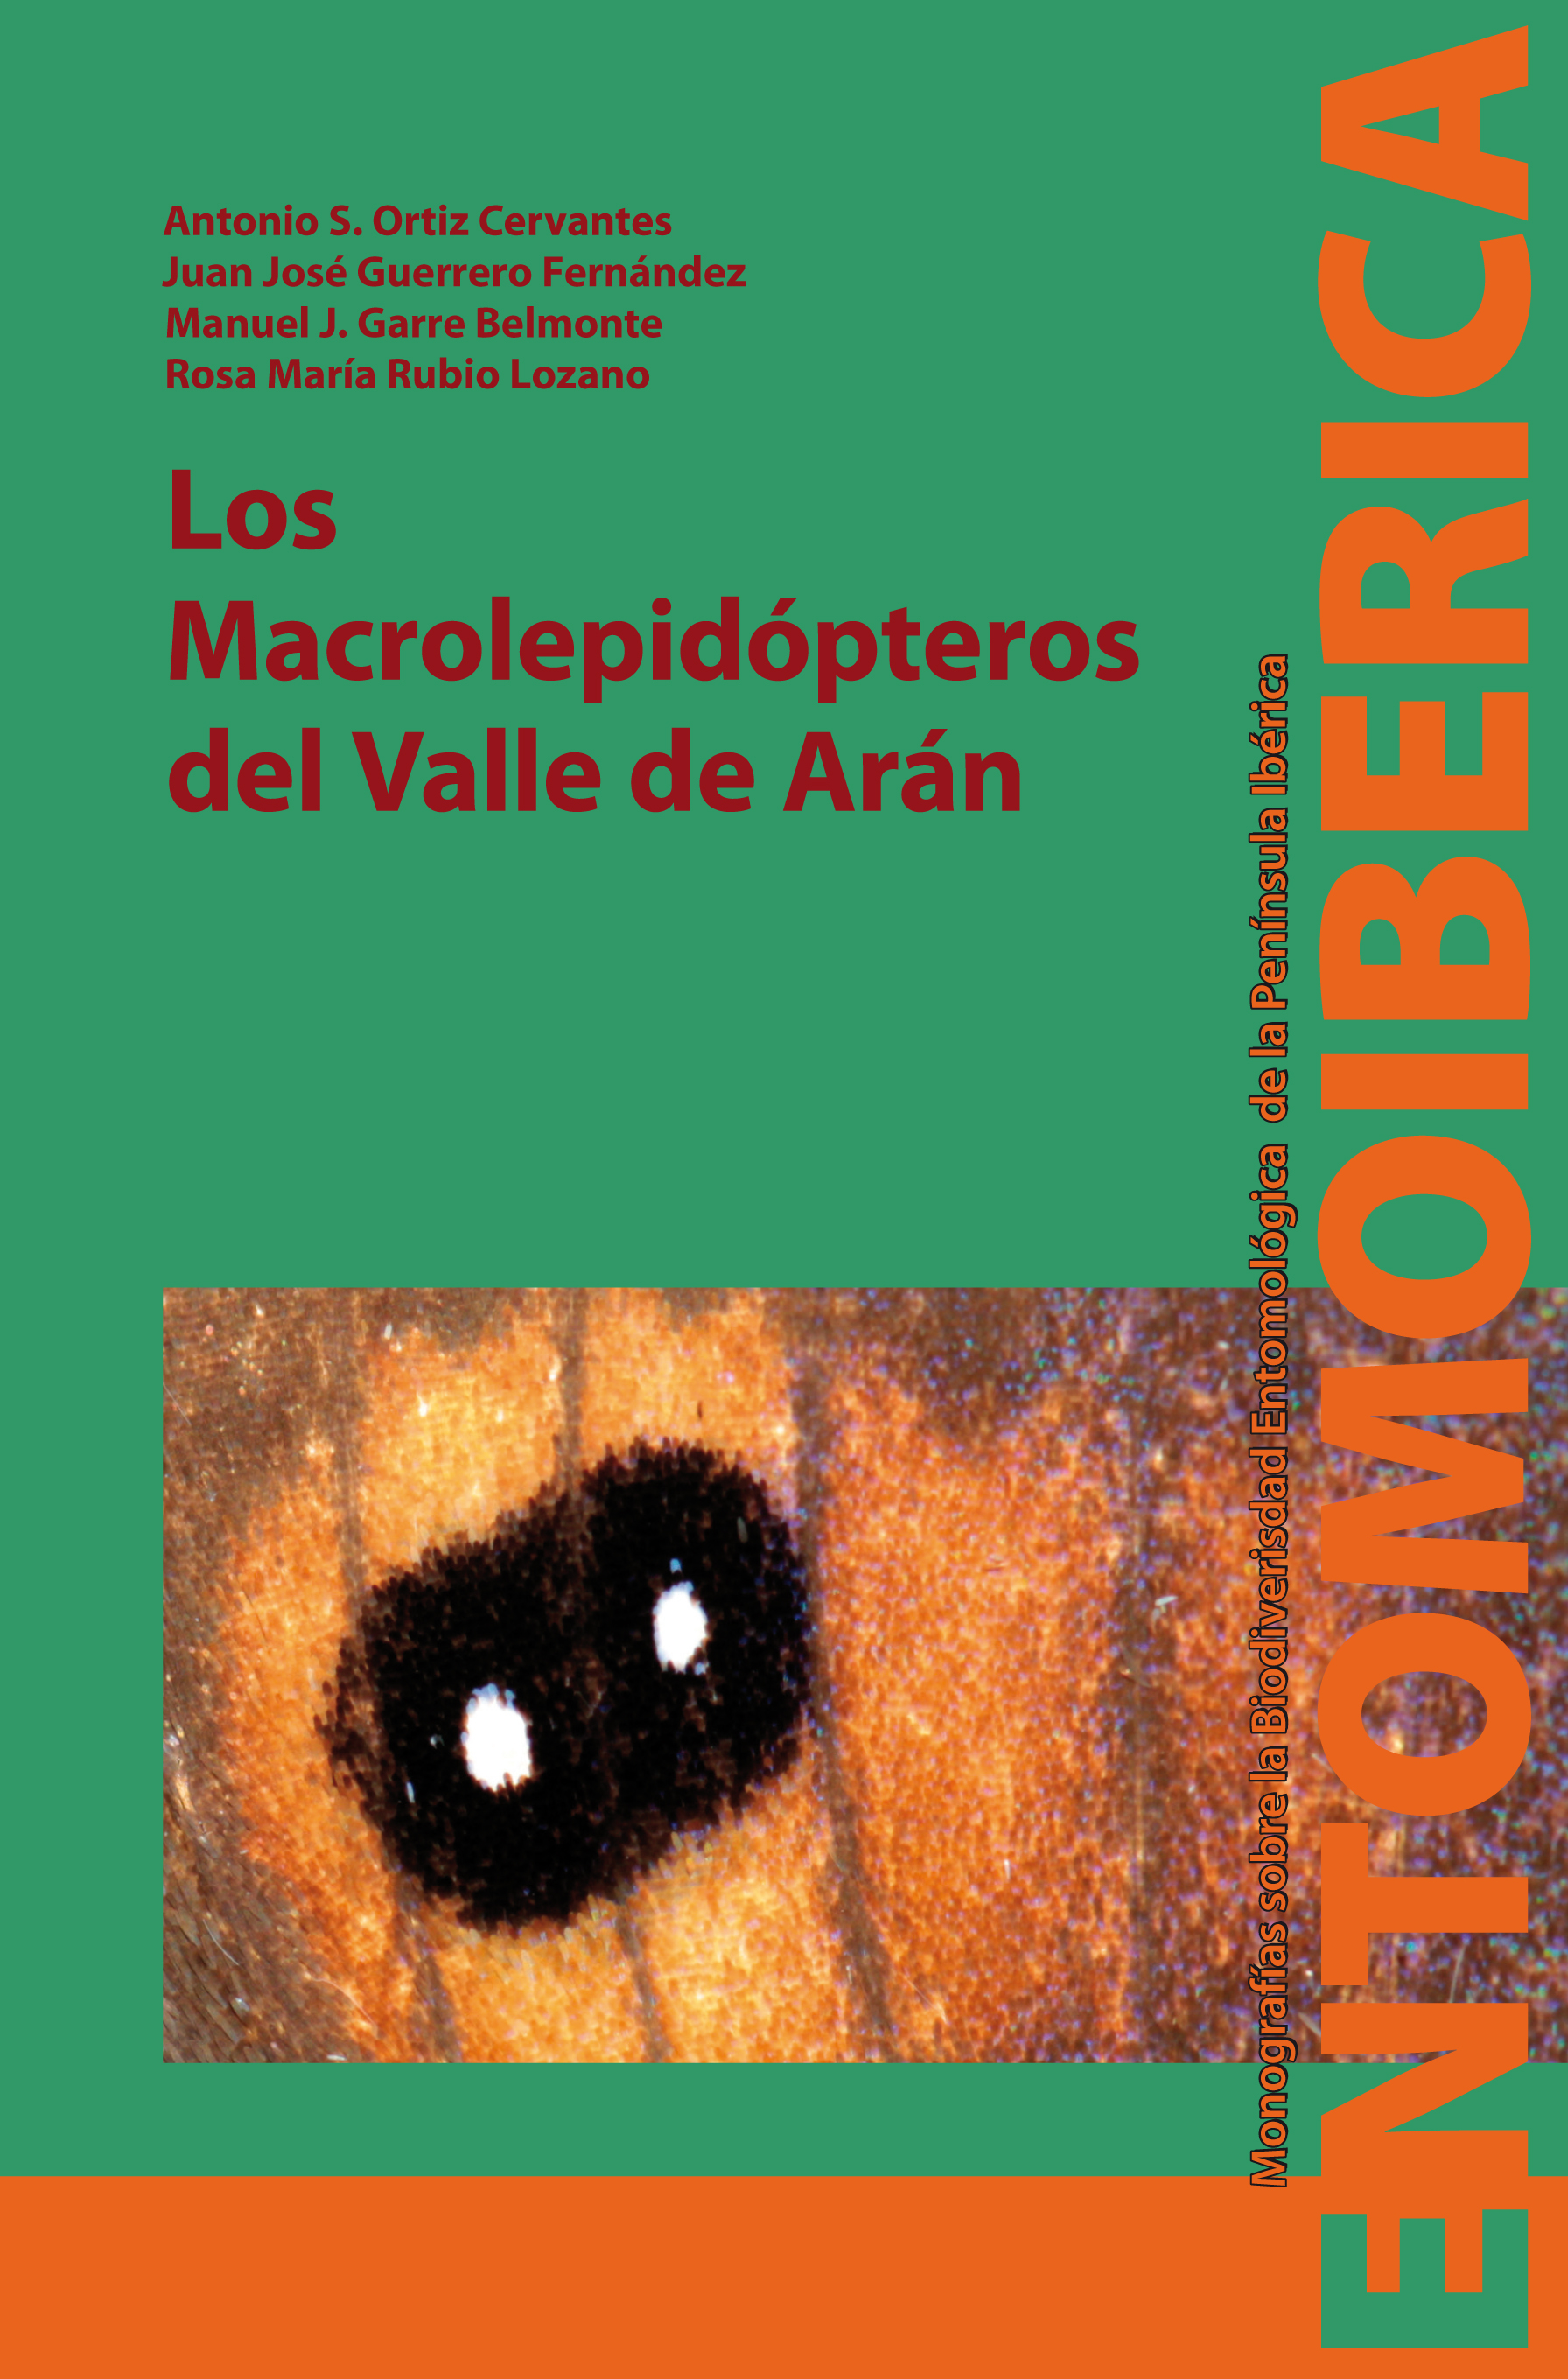 Imagen de portada del libro Los macrolepidópteros del Valle de Arán